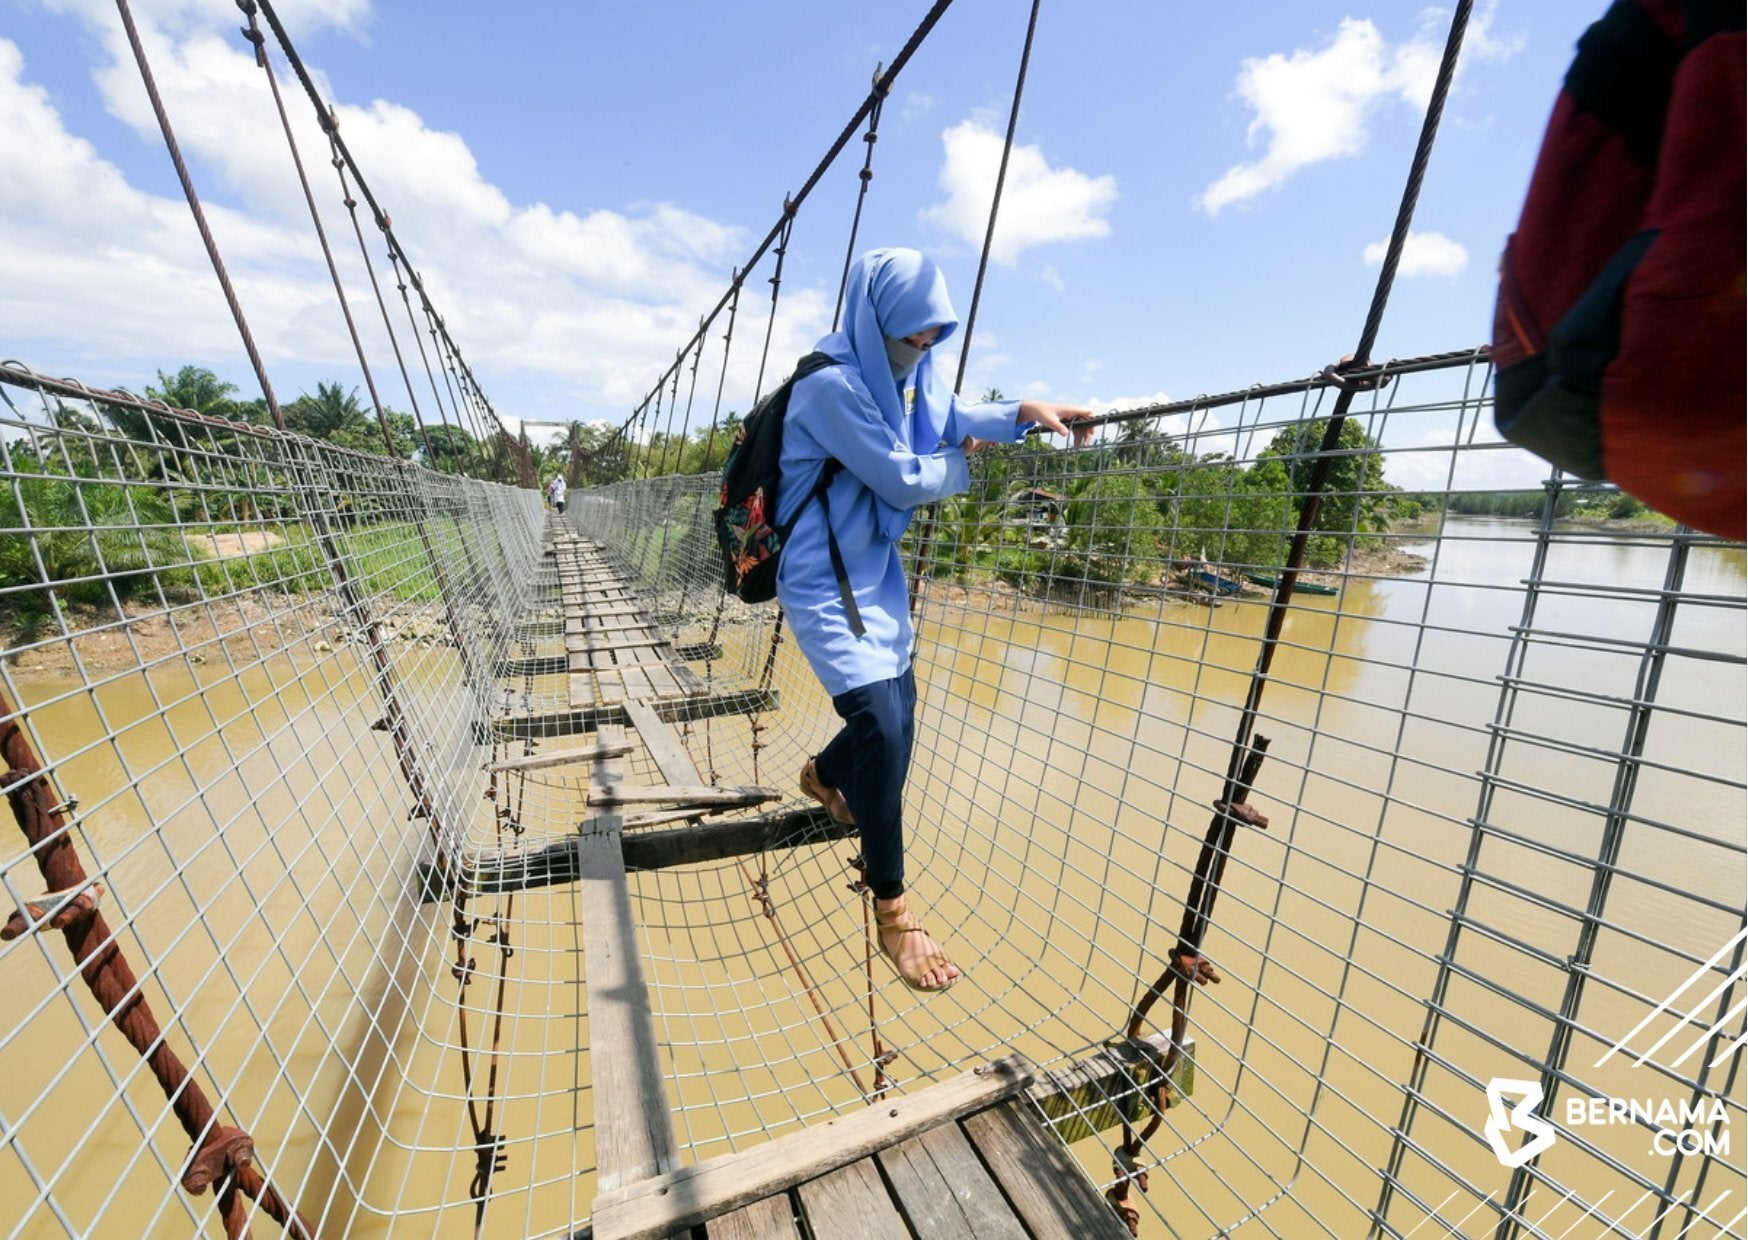 Students Crossing Dangerous Bridge To Get To School 2